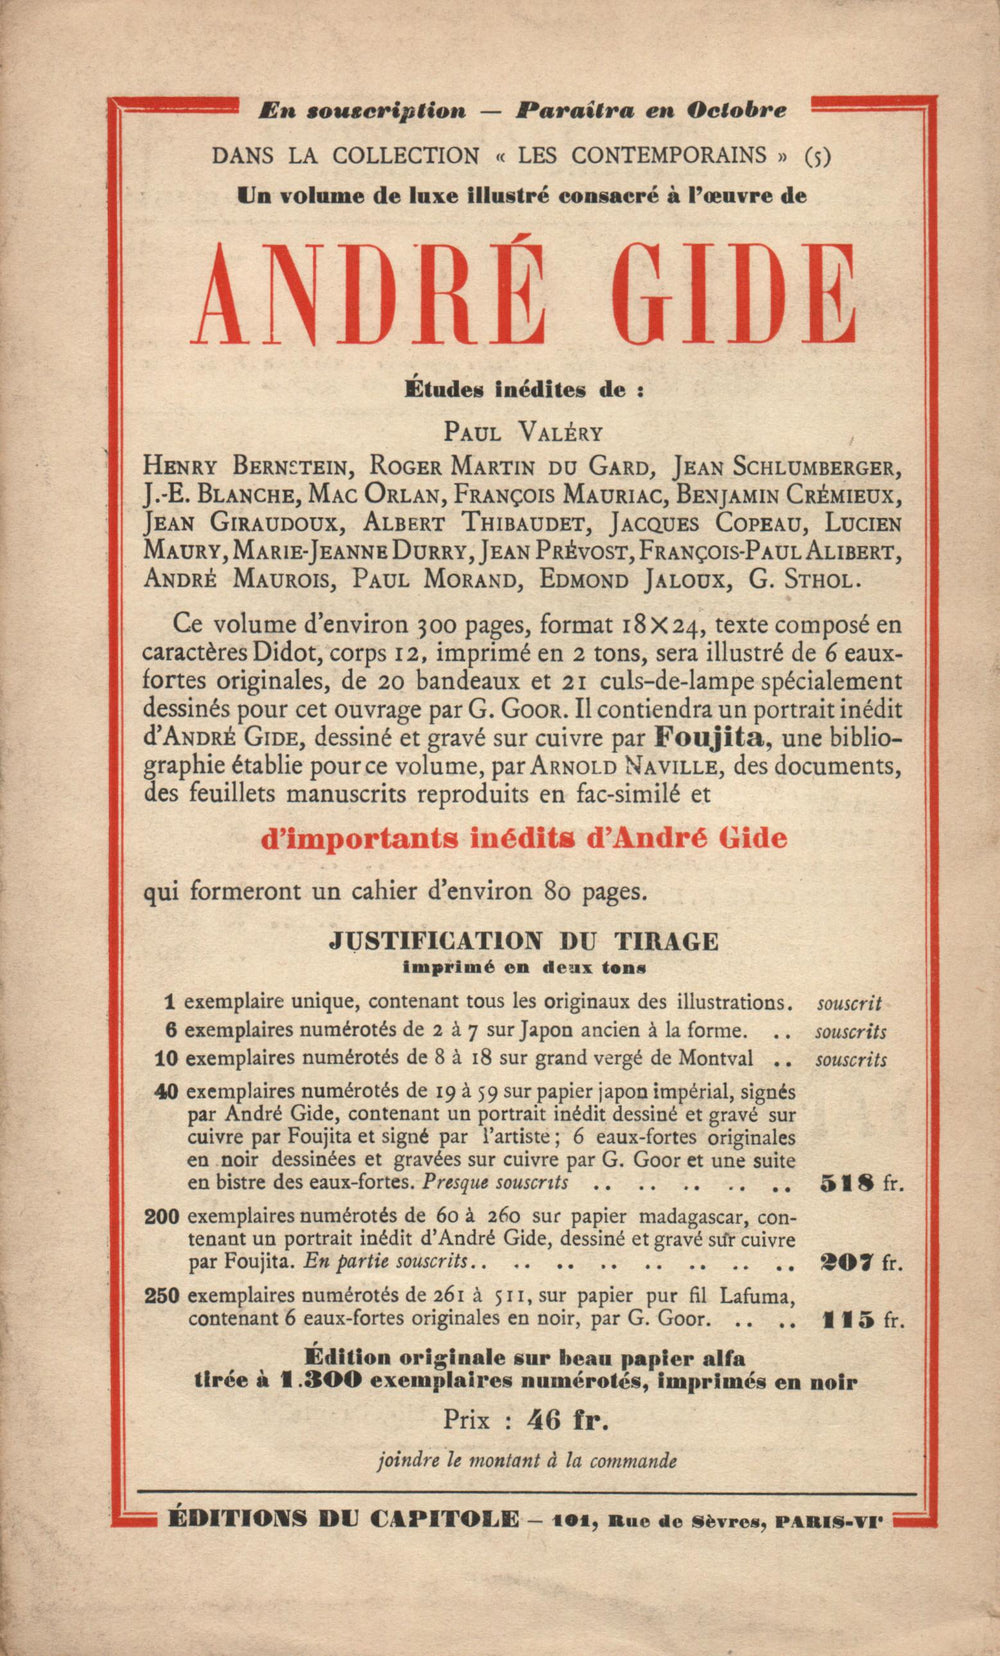 La Nouvelle Revue Française N' 168 (Septembre 1927)